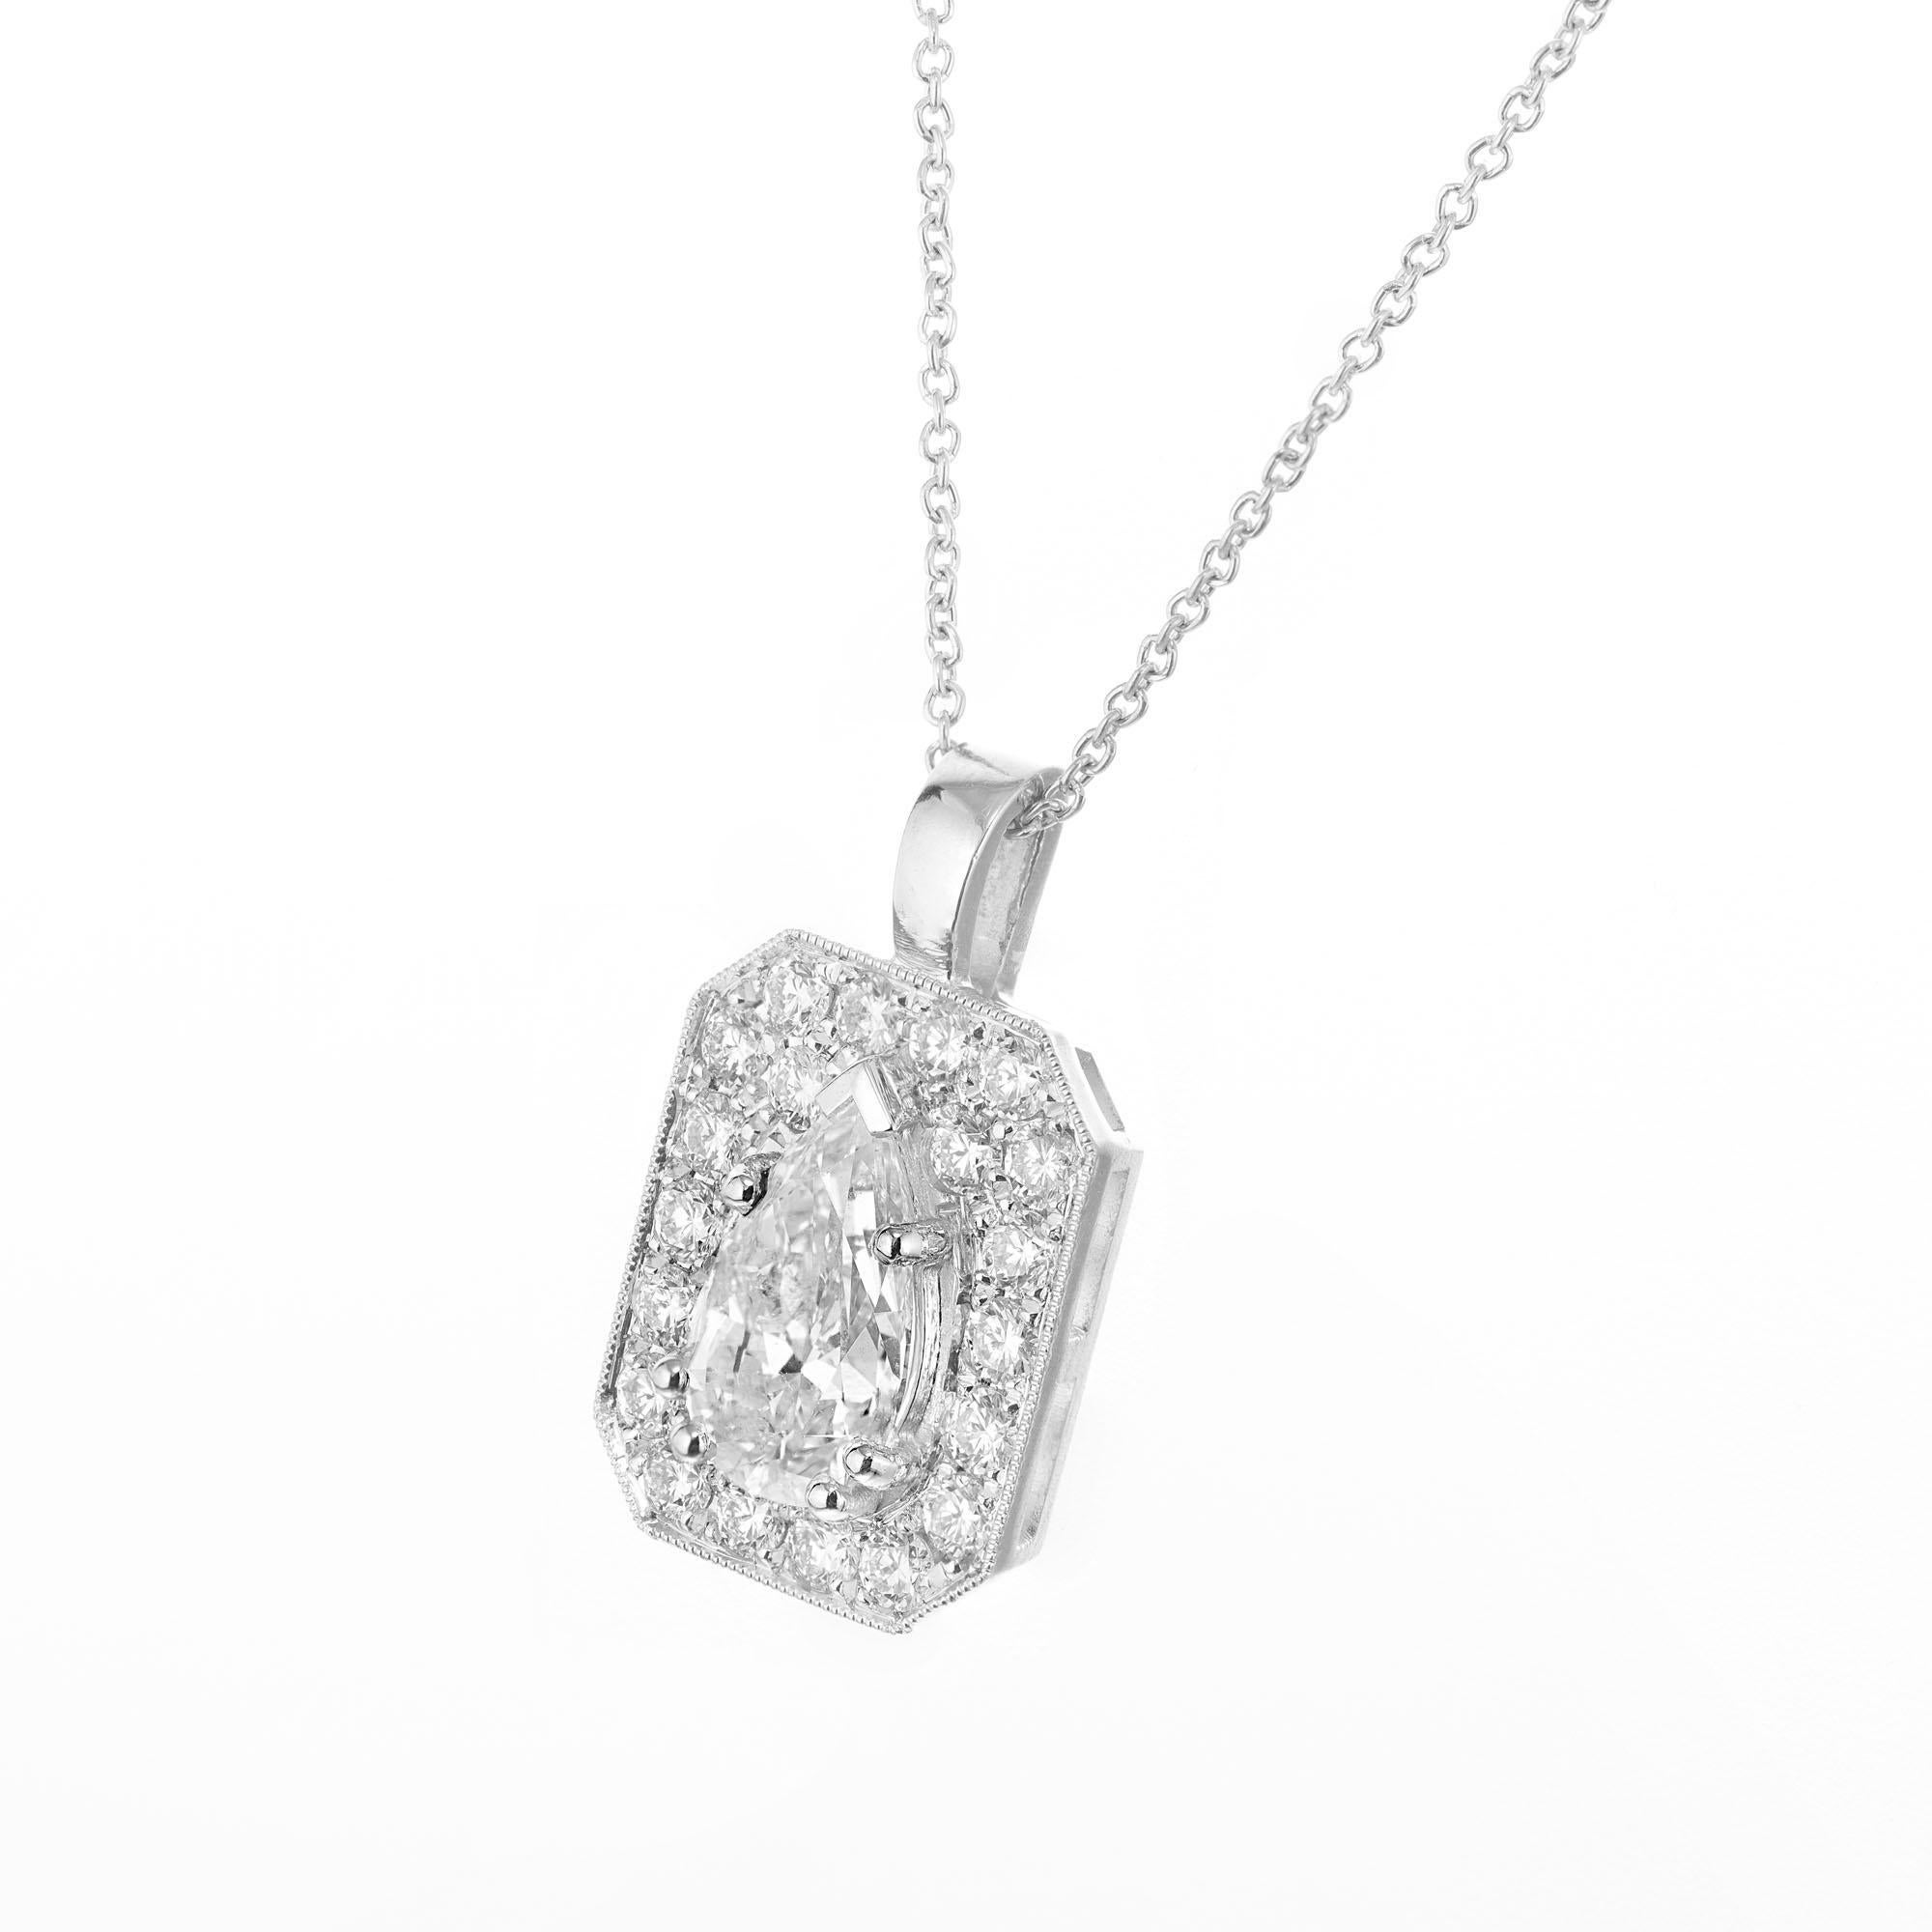 Diamant en forme de poire dans un halo octogonal de diamants pavés. Serti en platine avec une chaîne de 16 pouces. Conçu et fabriqué dans l'atelier de Peter Suchy. 

1 diamant poire bien taillé, poids total approx. 1.01cts, G, I1, 8.63 x 5.50 x